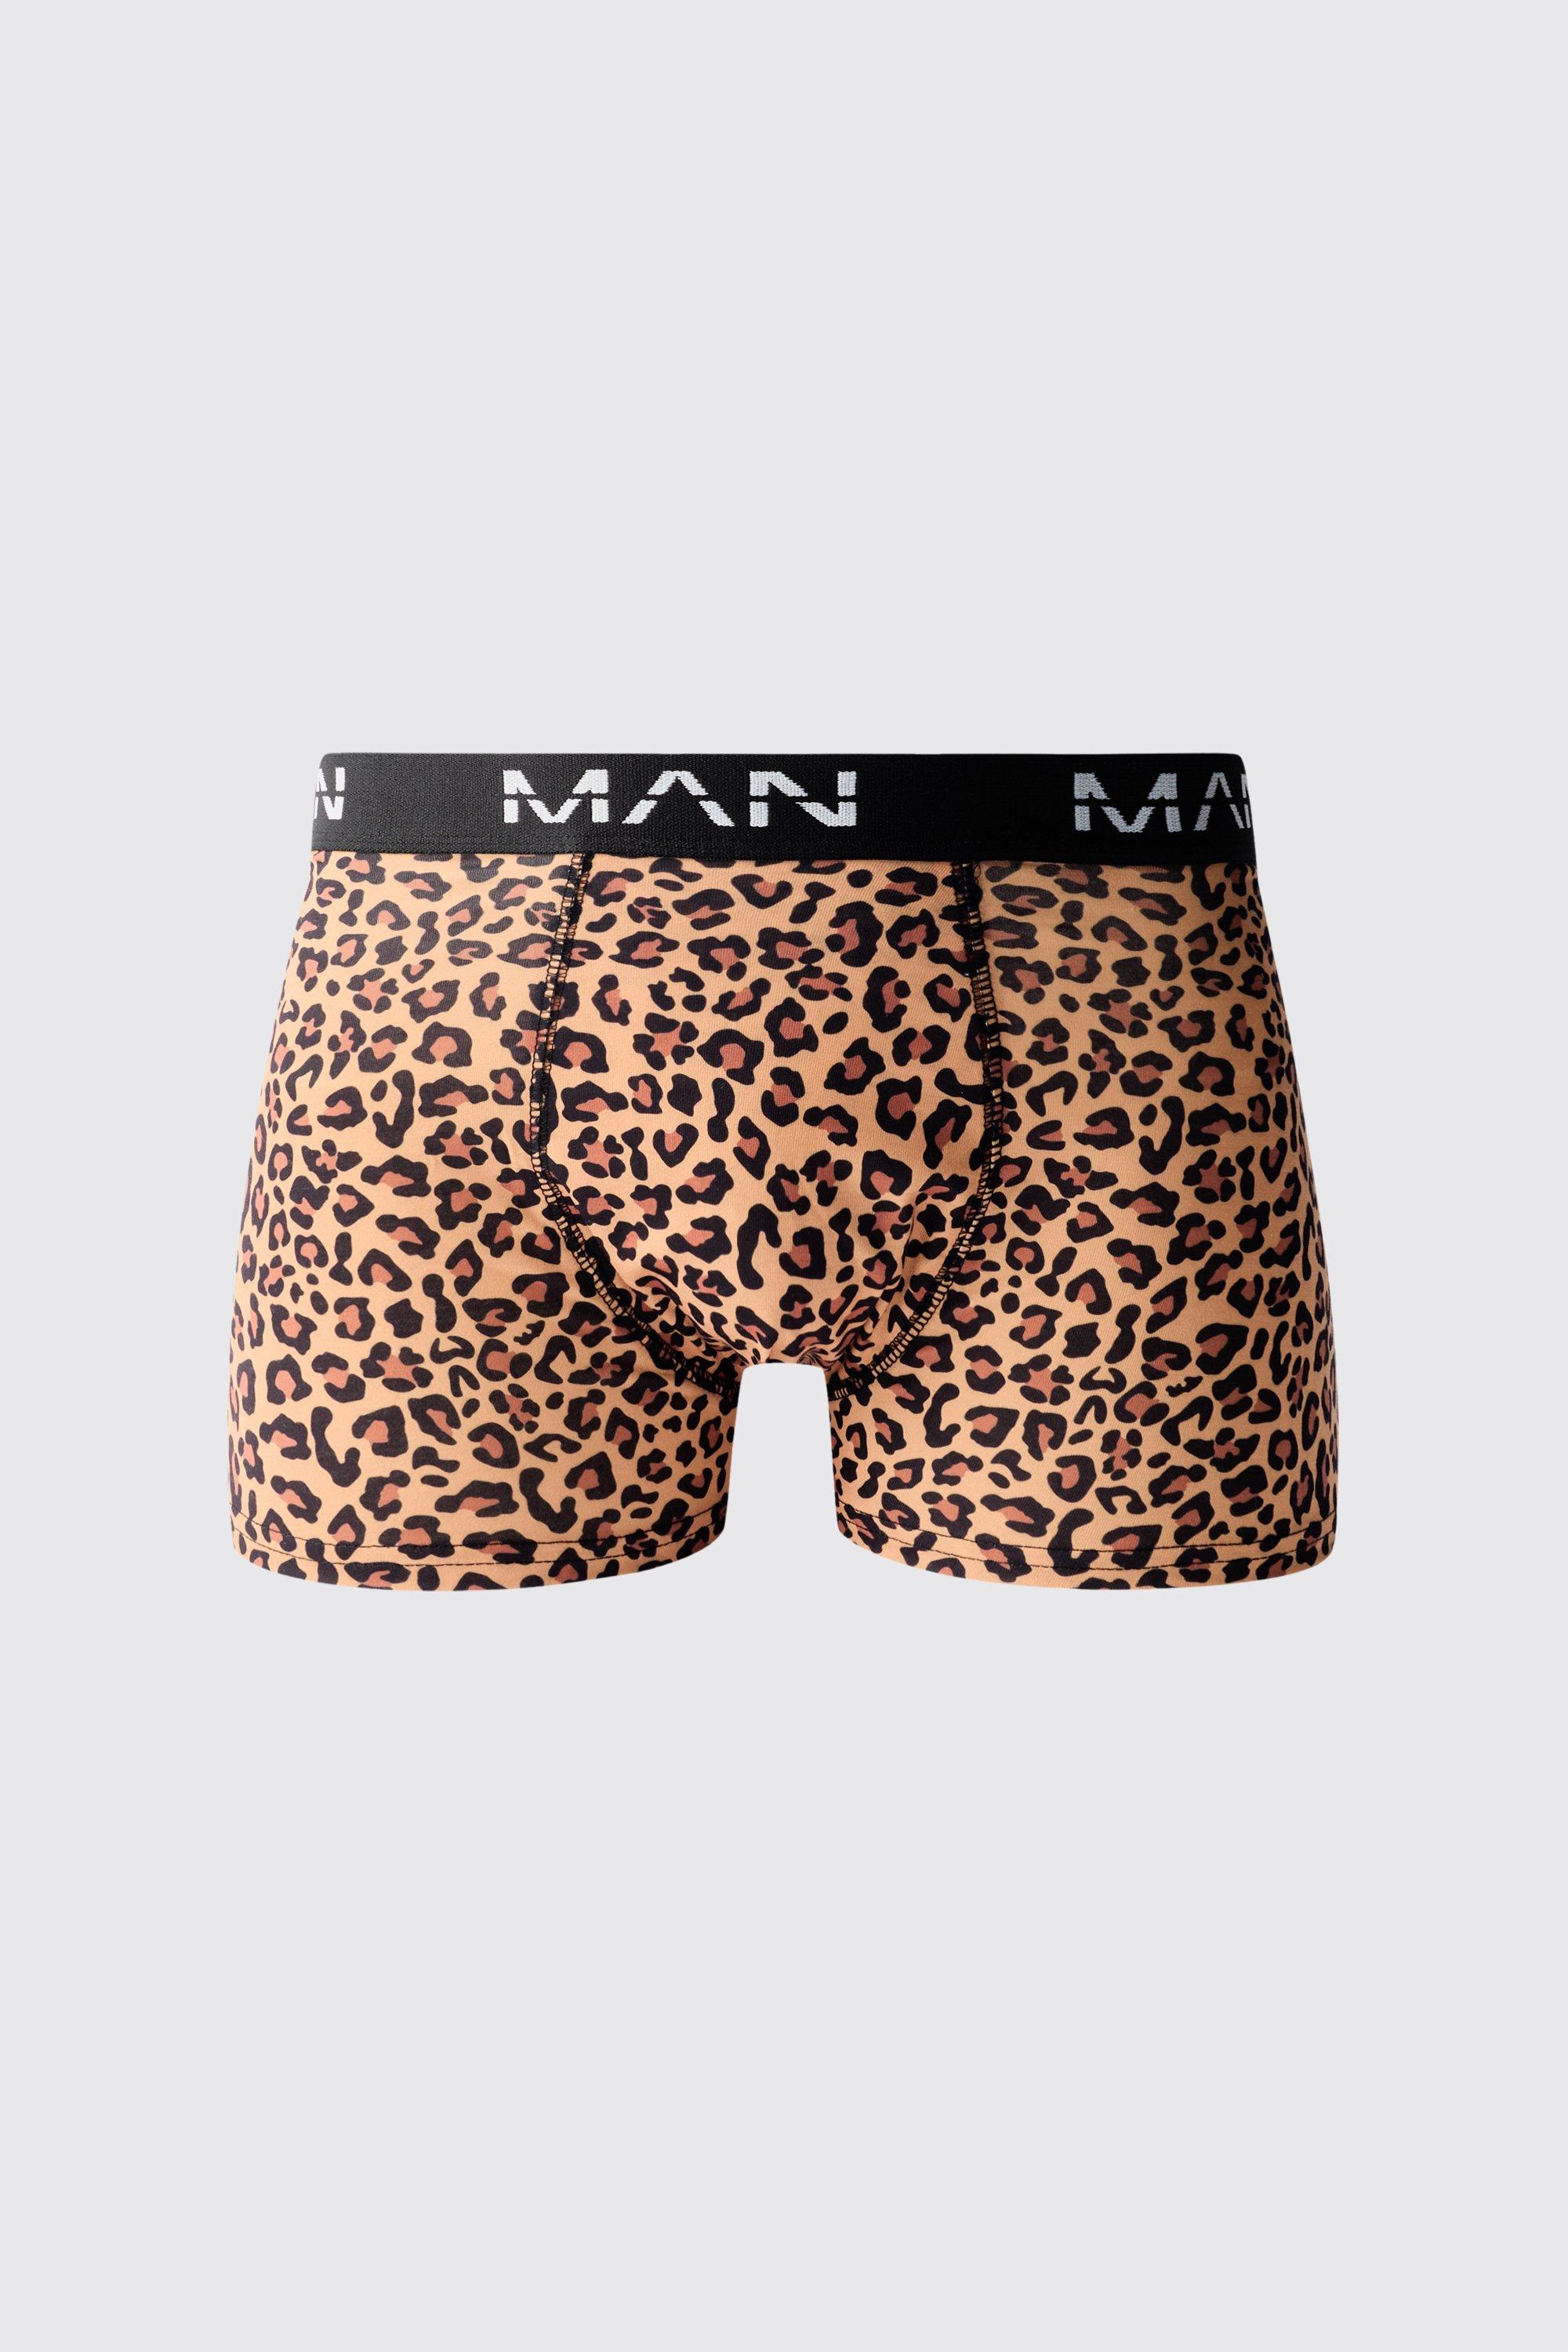 boxer à imprimé léopard - man homme - multicolore - xs, multicolore